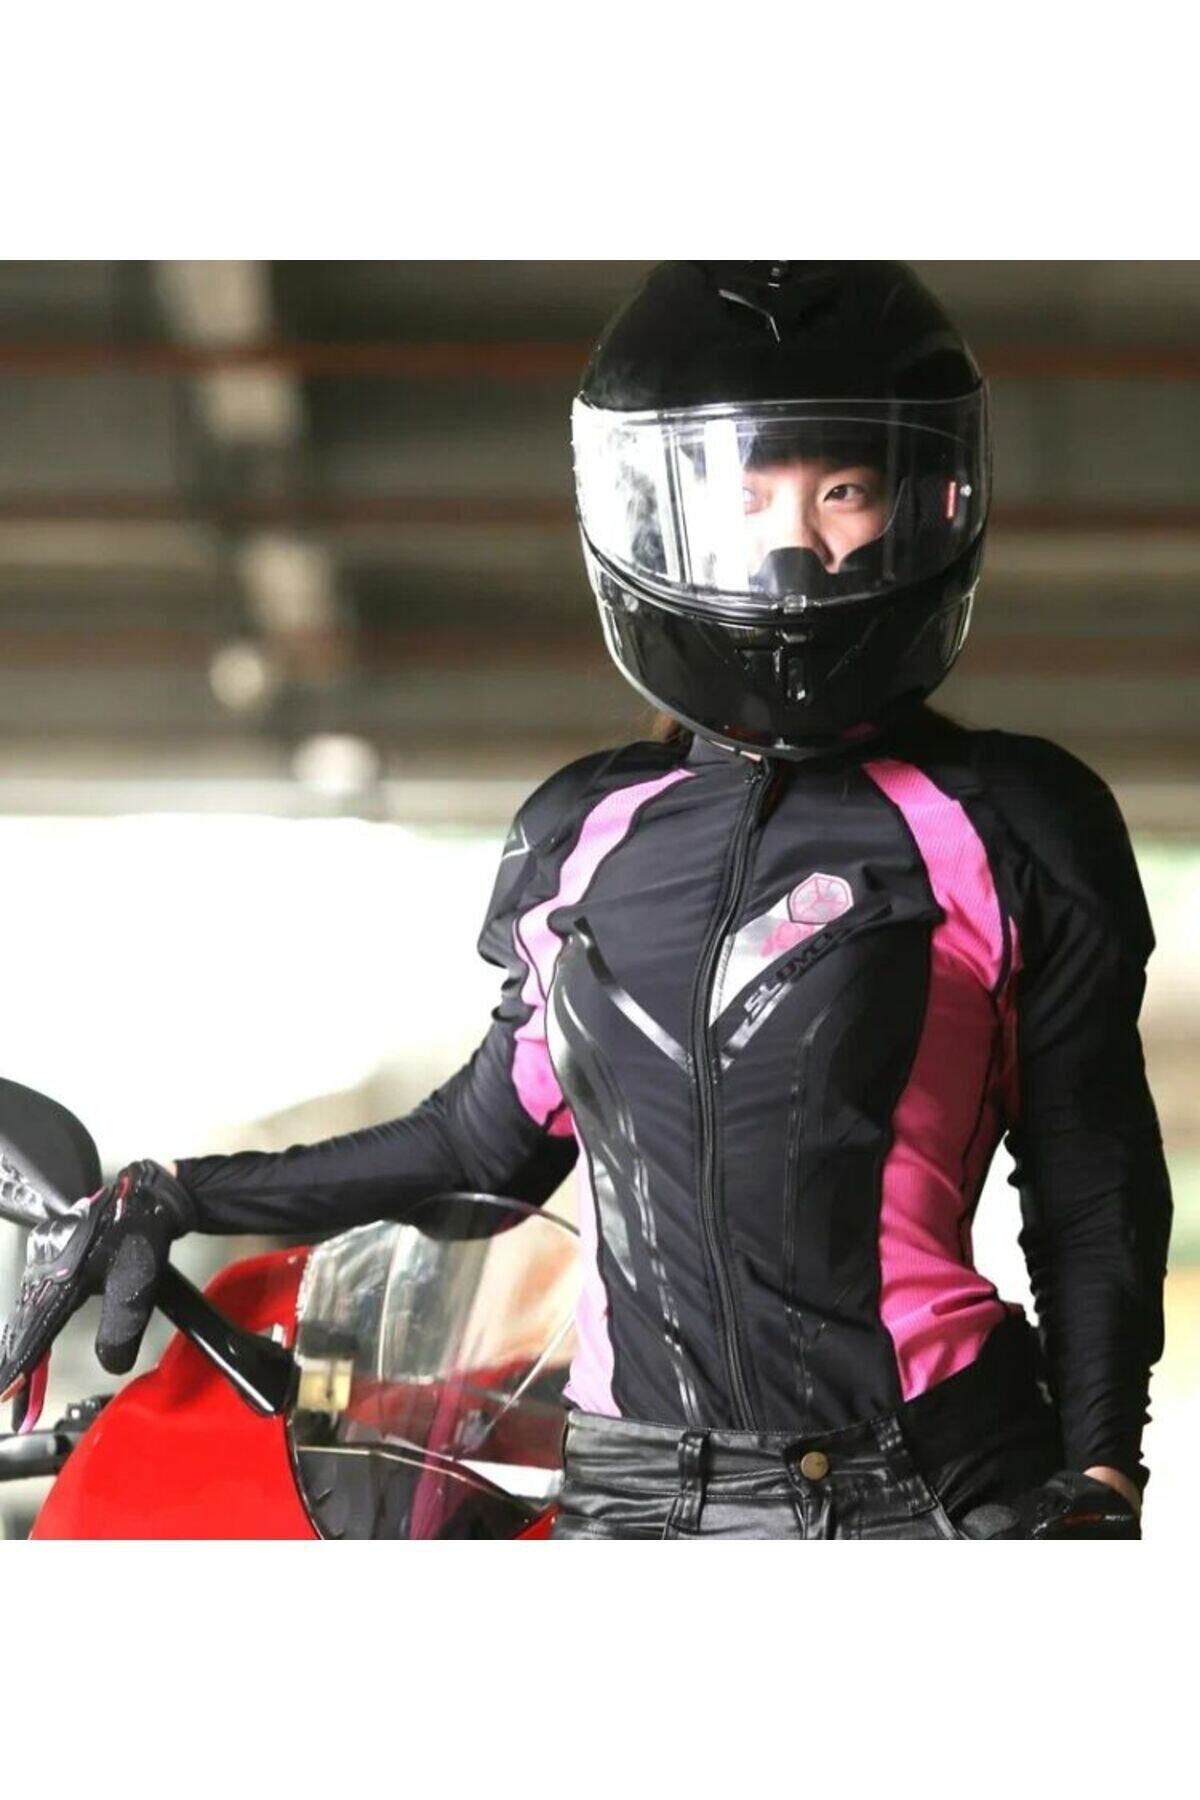 MOTOANL Motosiklet Body Armor Ce Onaylı Korumalar Mont Içerisine Giyilebilen Kadın Mont Body Armor